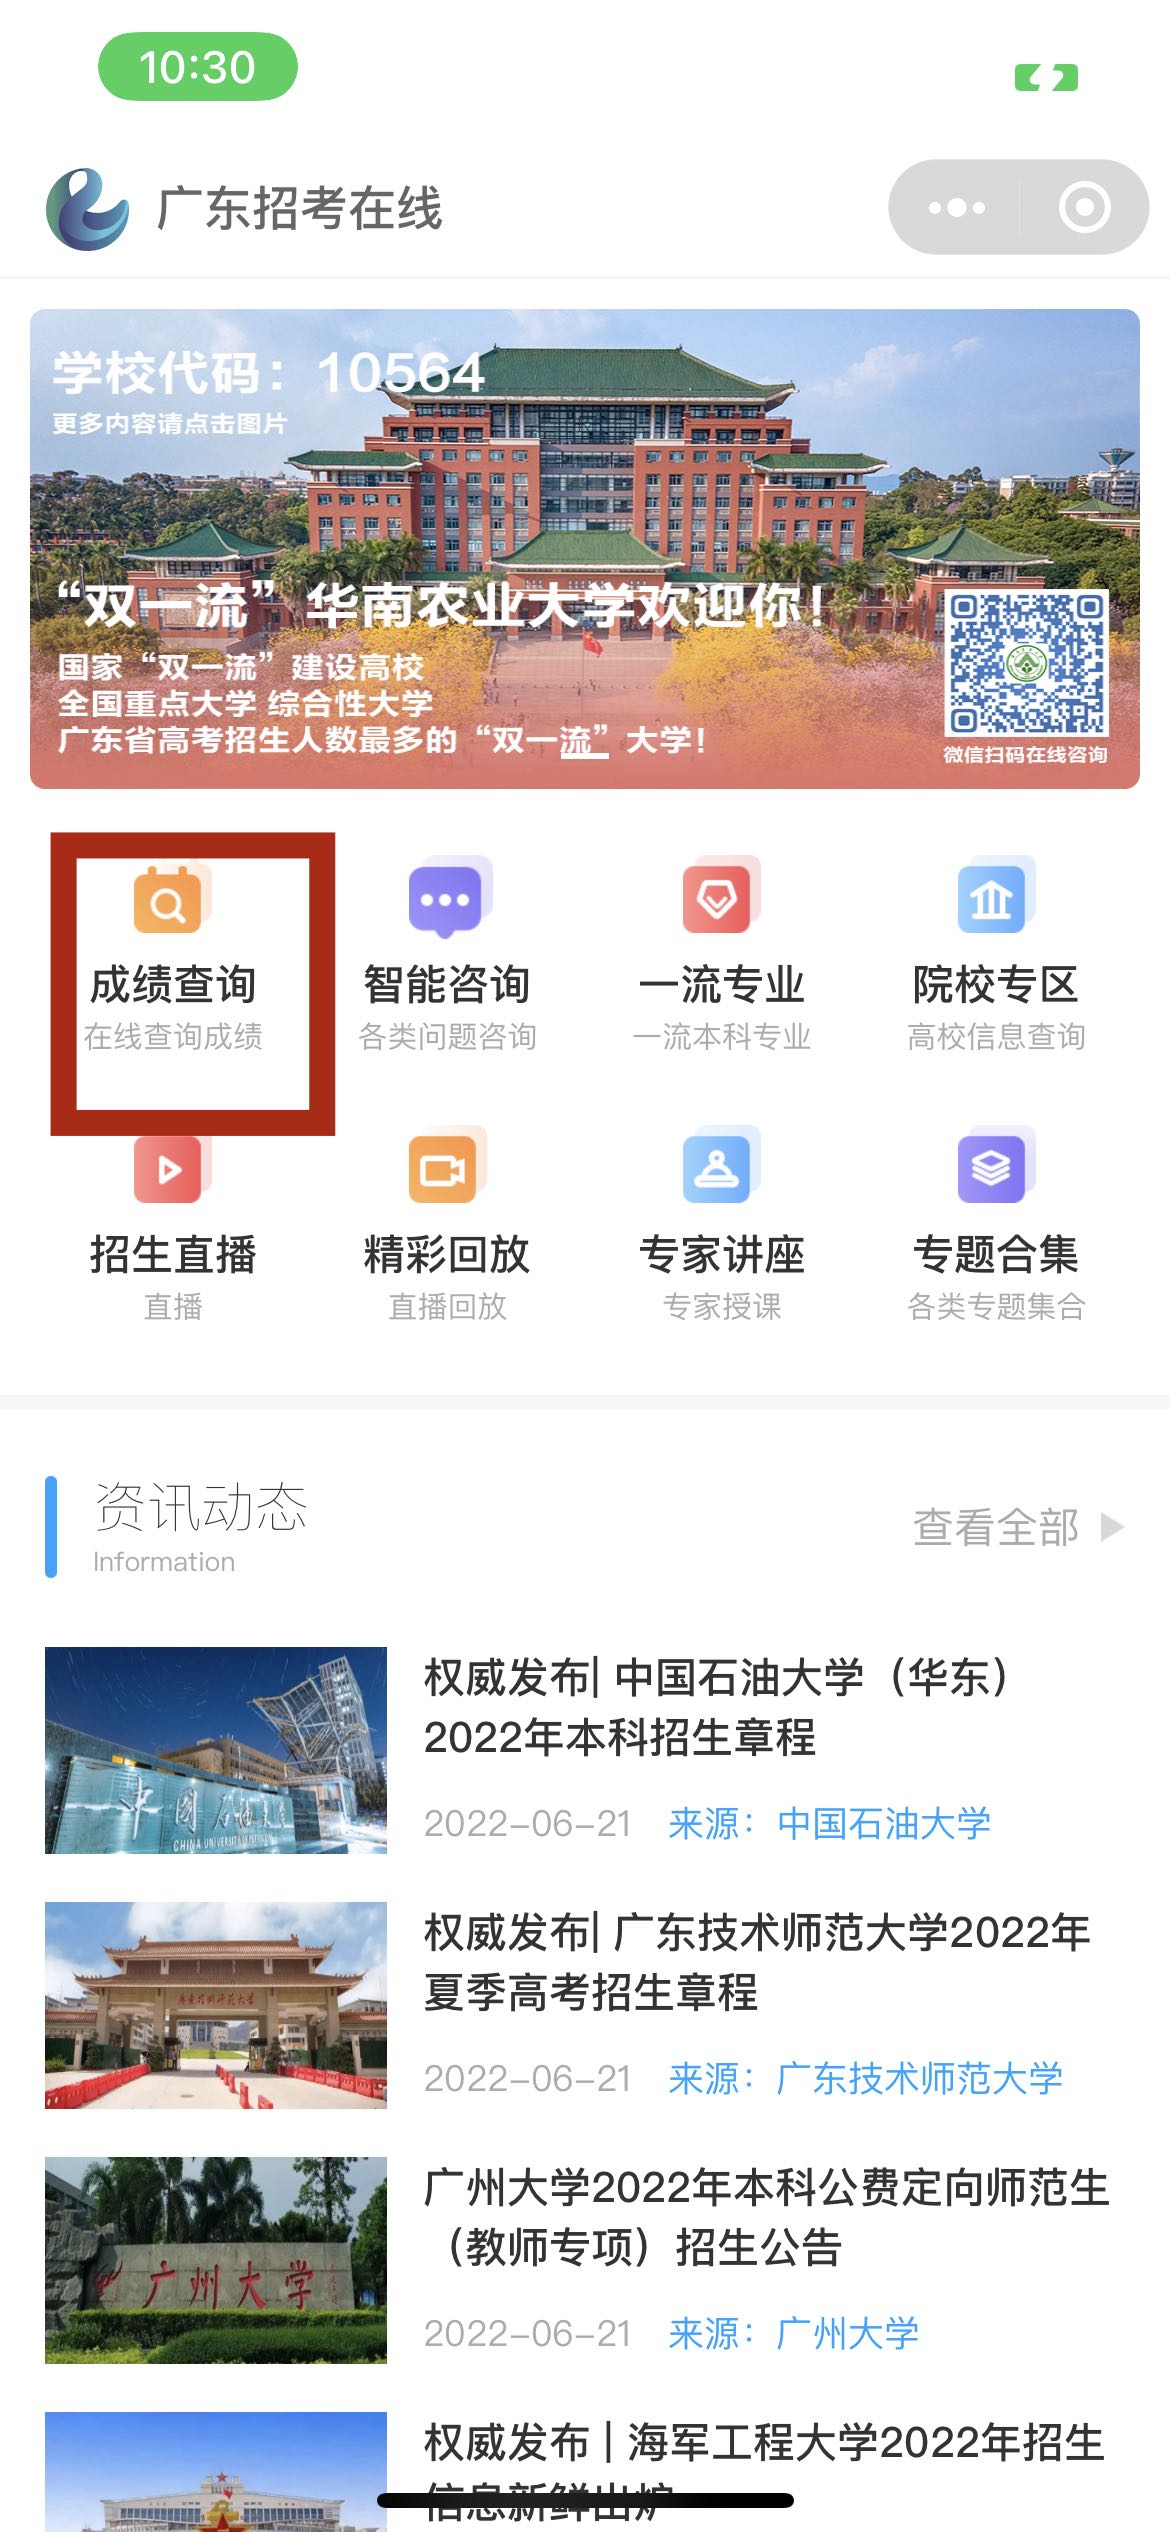 2022年广东高考查分官方入口“广东省教育考试院”小程序